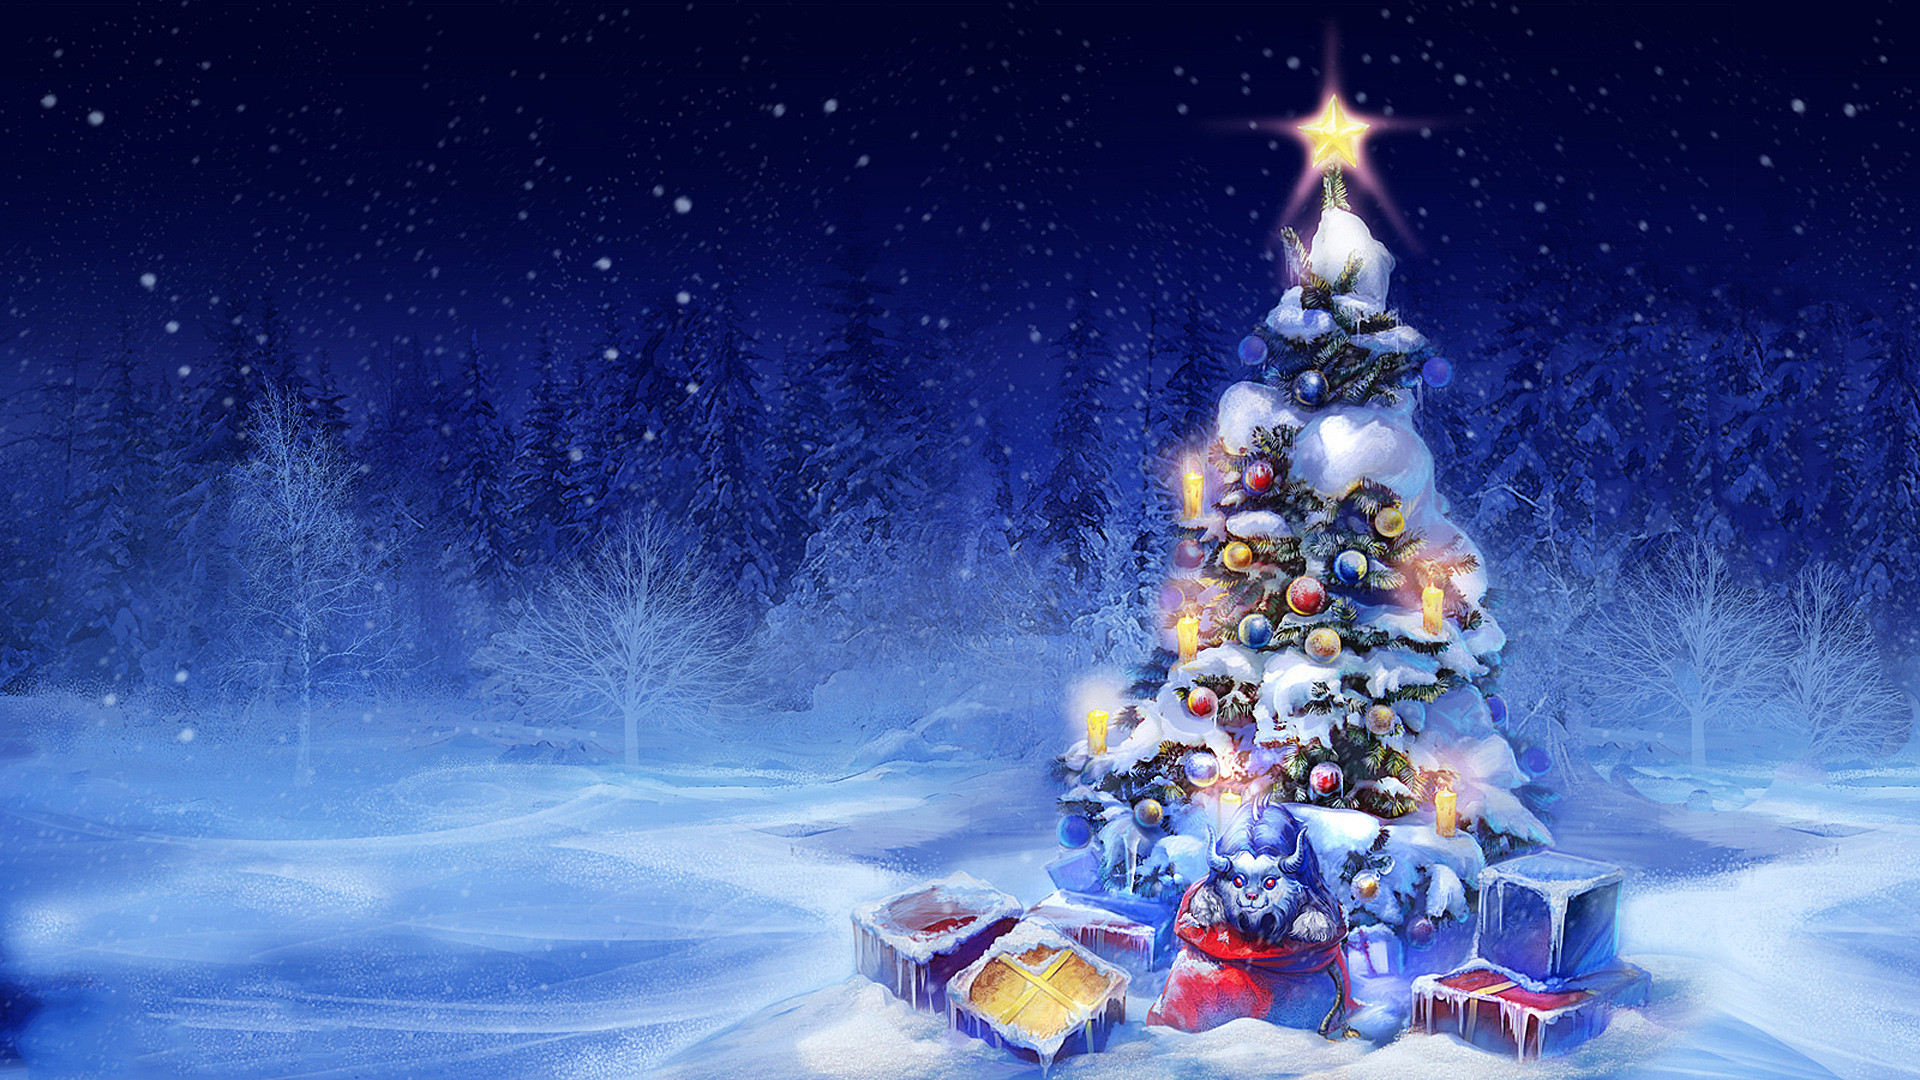 Скачать обои бесплатно Зима, Снег, Рождество, Рождественская Елка, Праздничные картинка на рабочий стол ПК